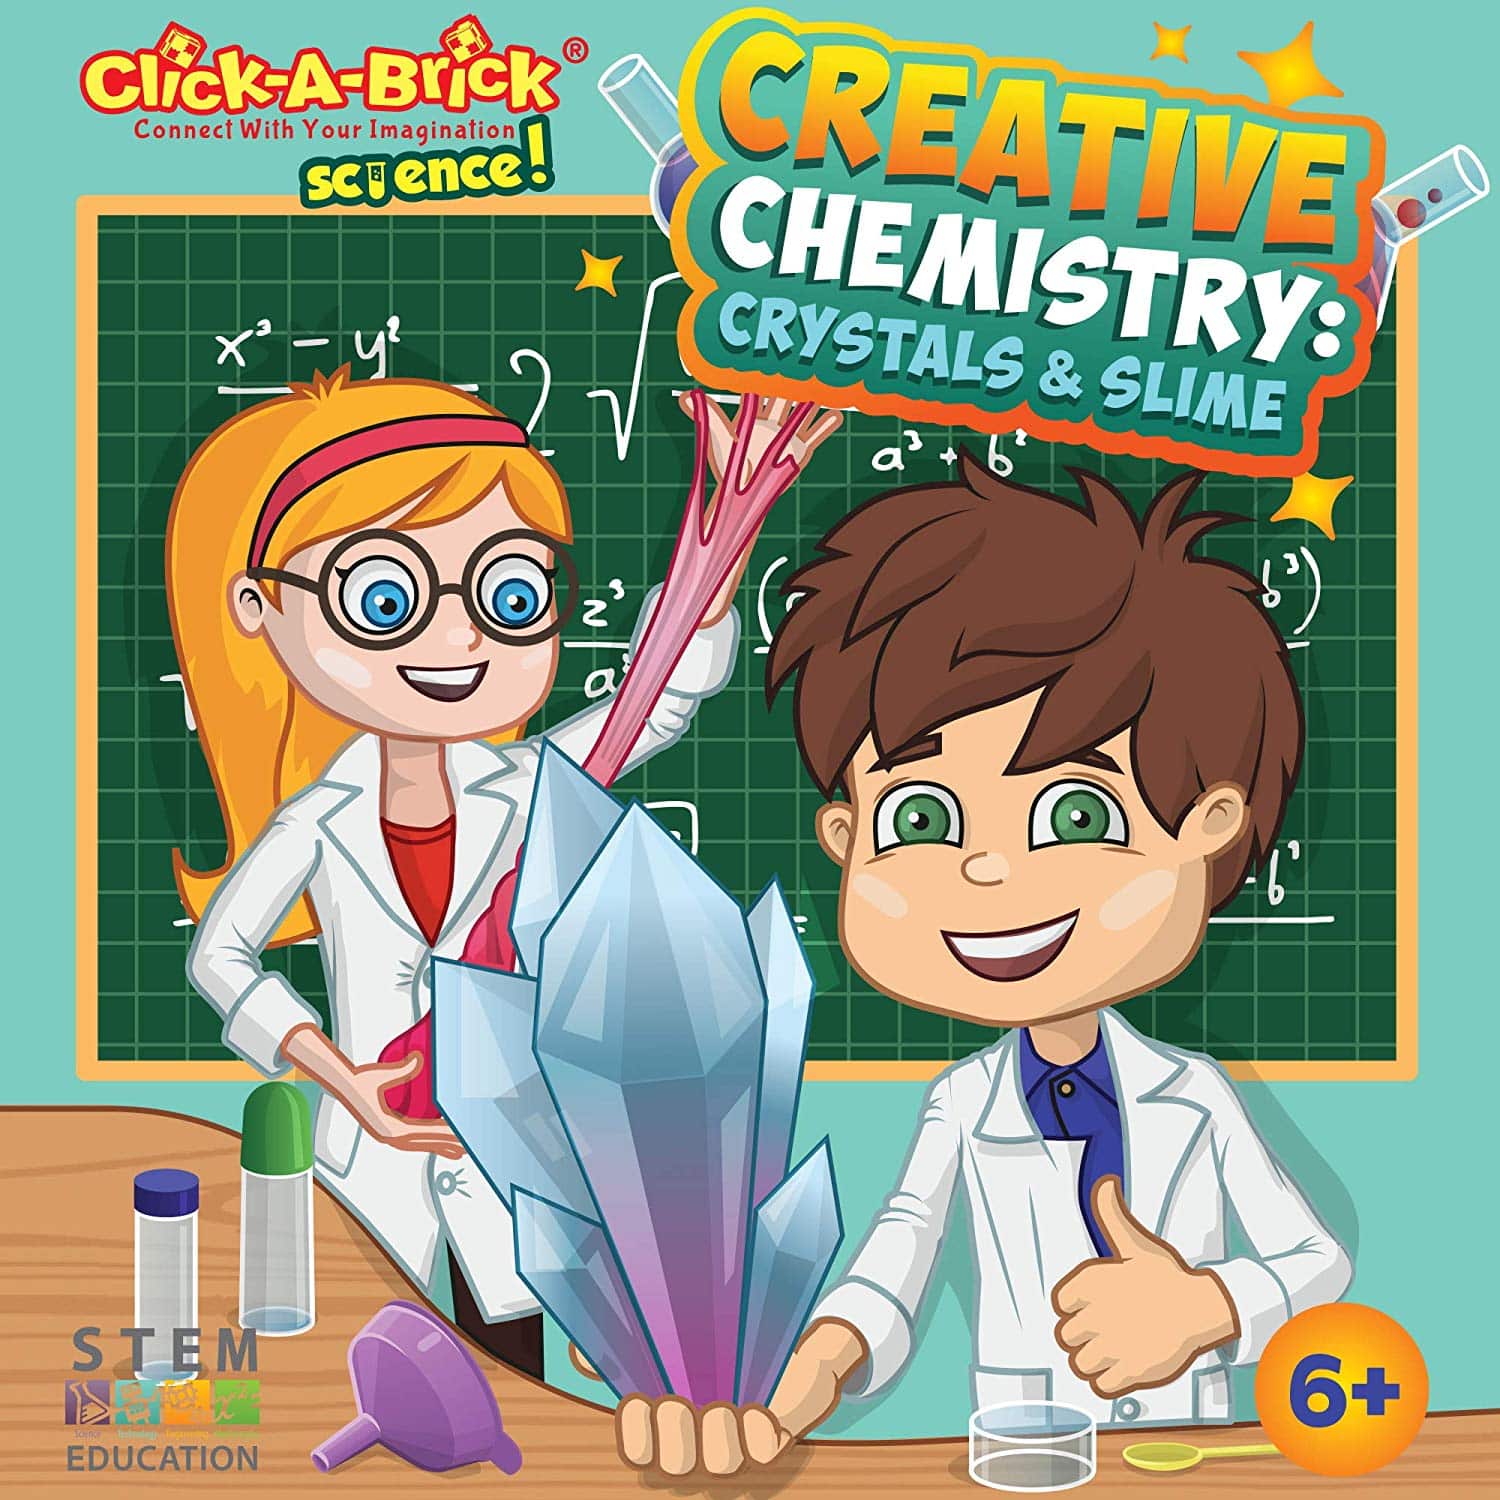 LIGHTNING DEAL ALERT! Creative Chemistry Crystals & Slime Science Kit for Kids 43% off